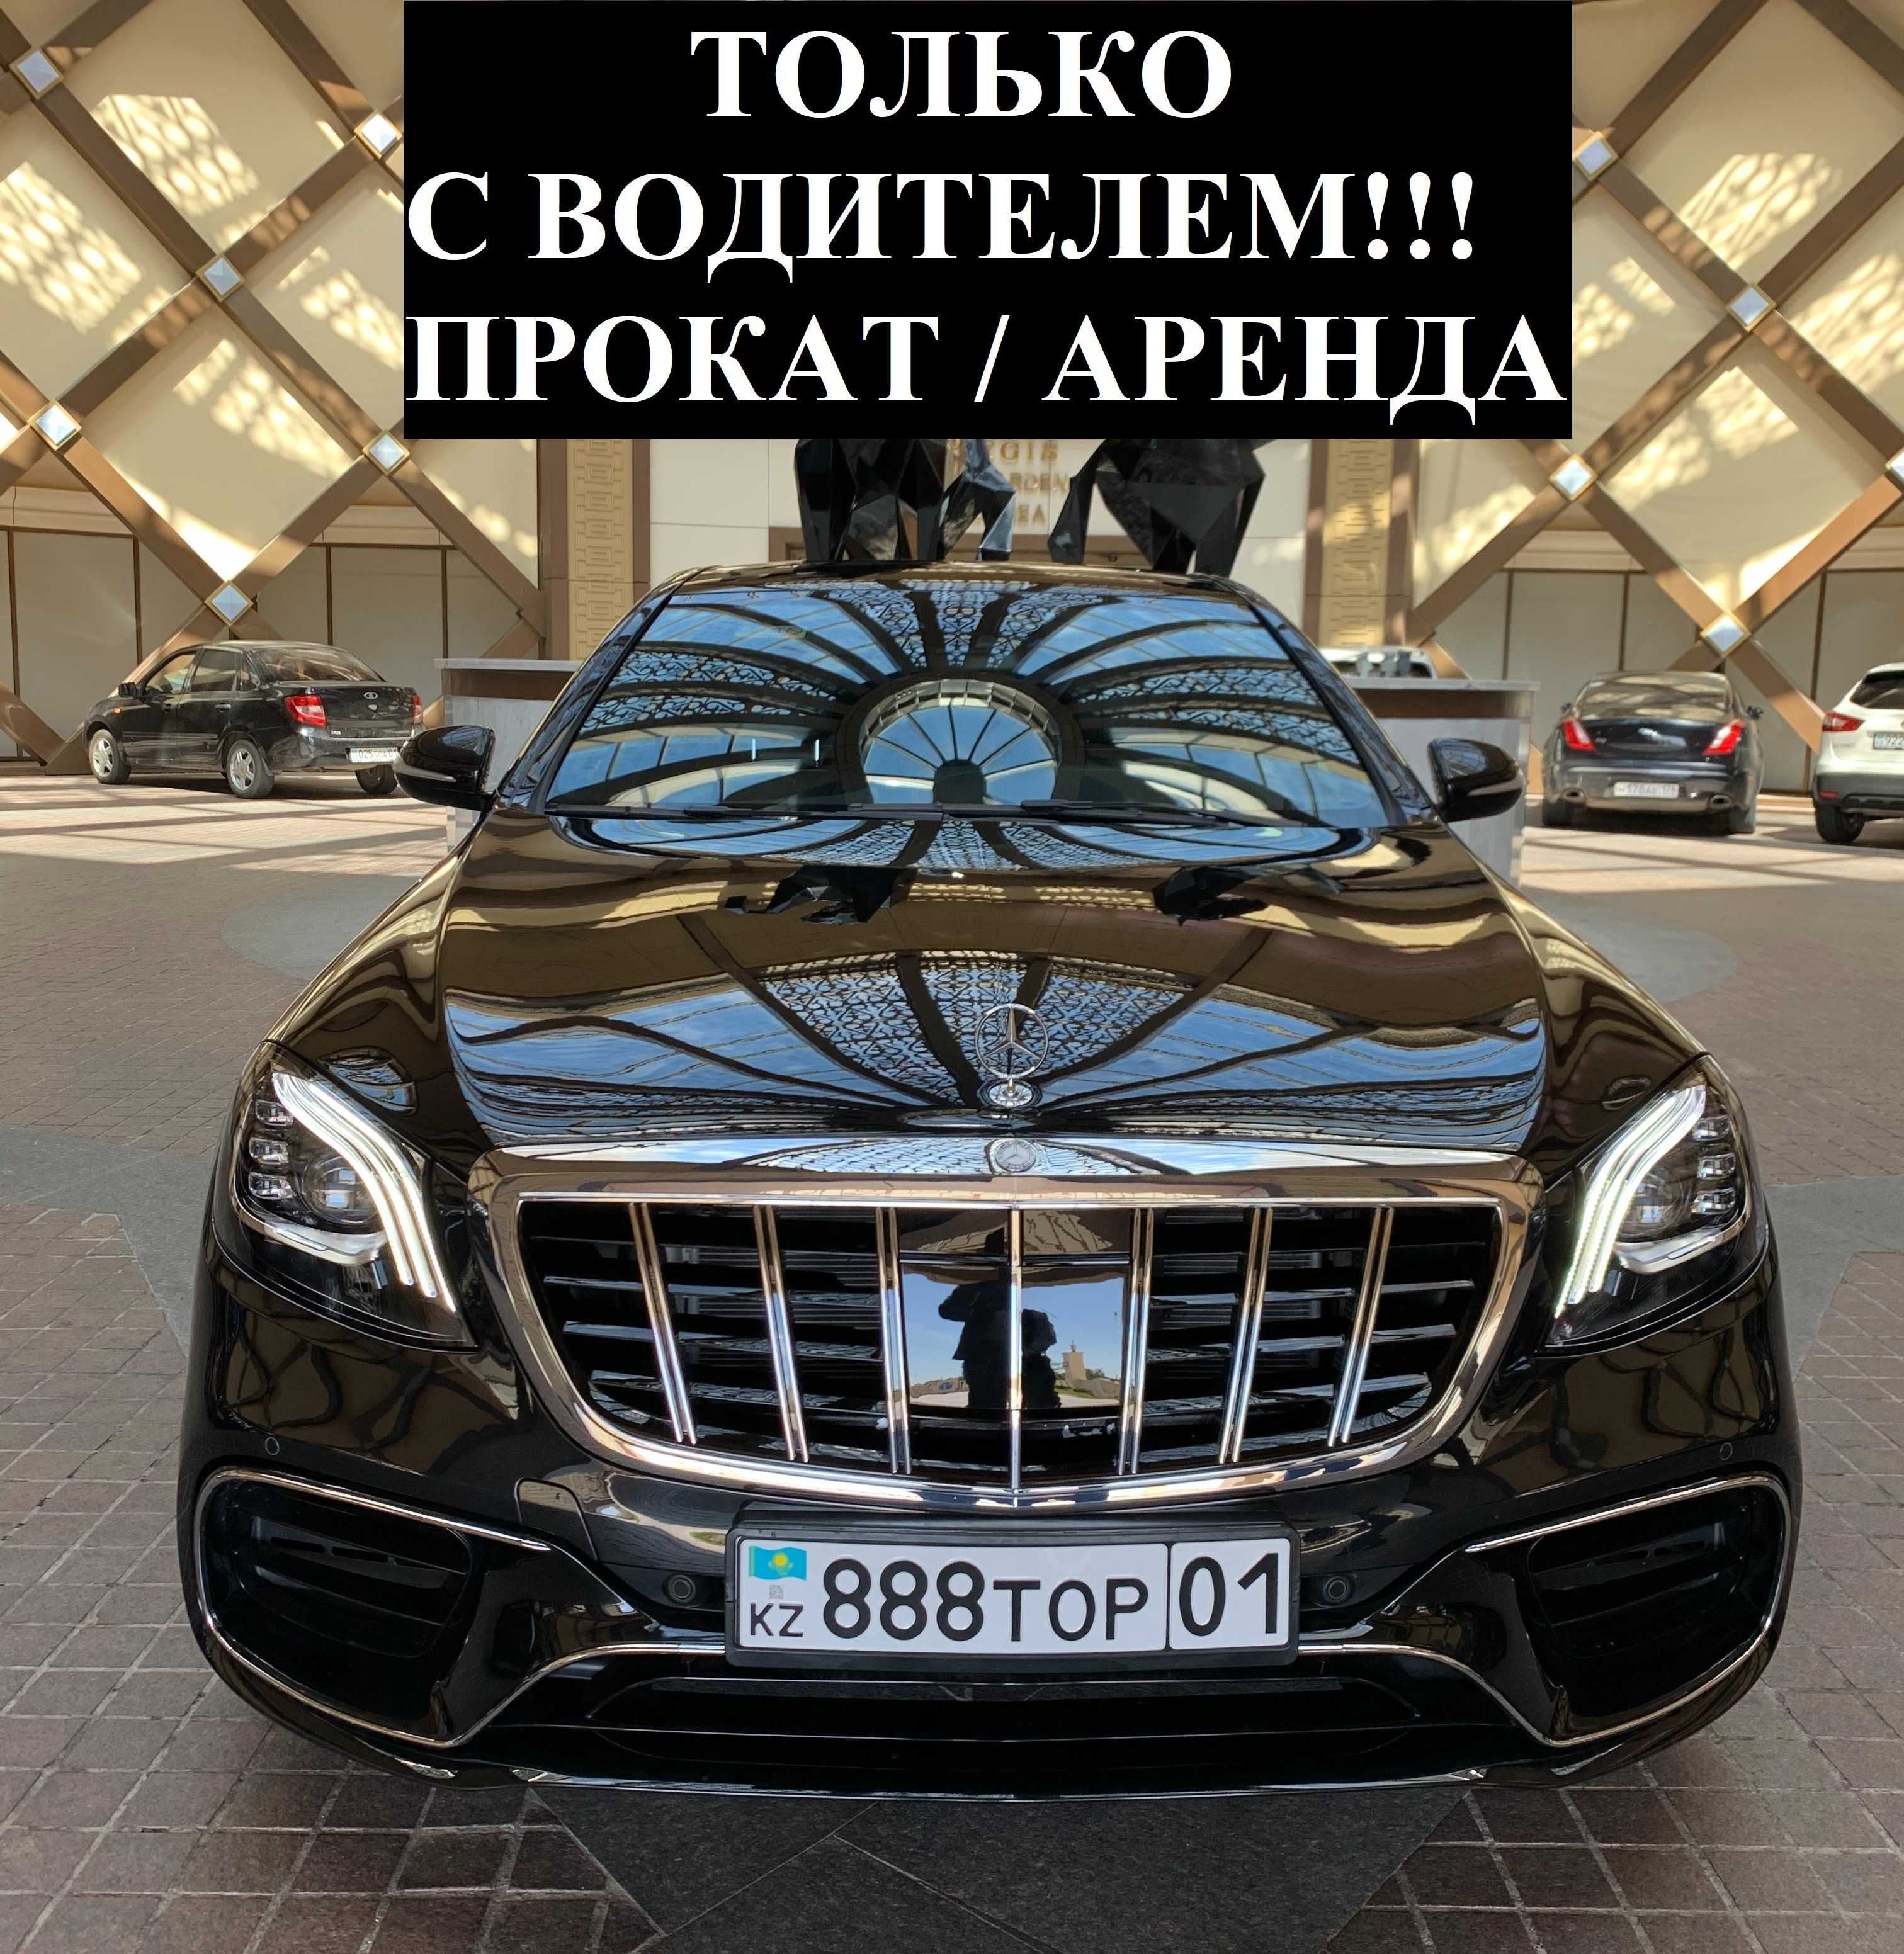 С ВОДИТЕЛЕМ!!! Аренда авто Прокат машины Mercedes Benz S - class W222